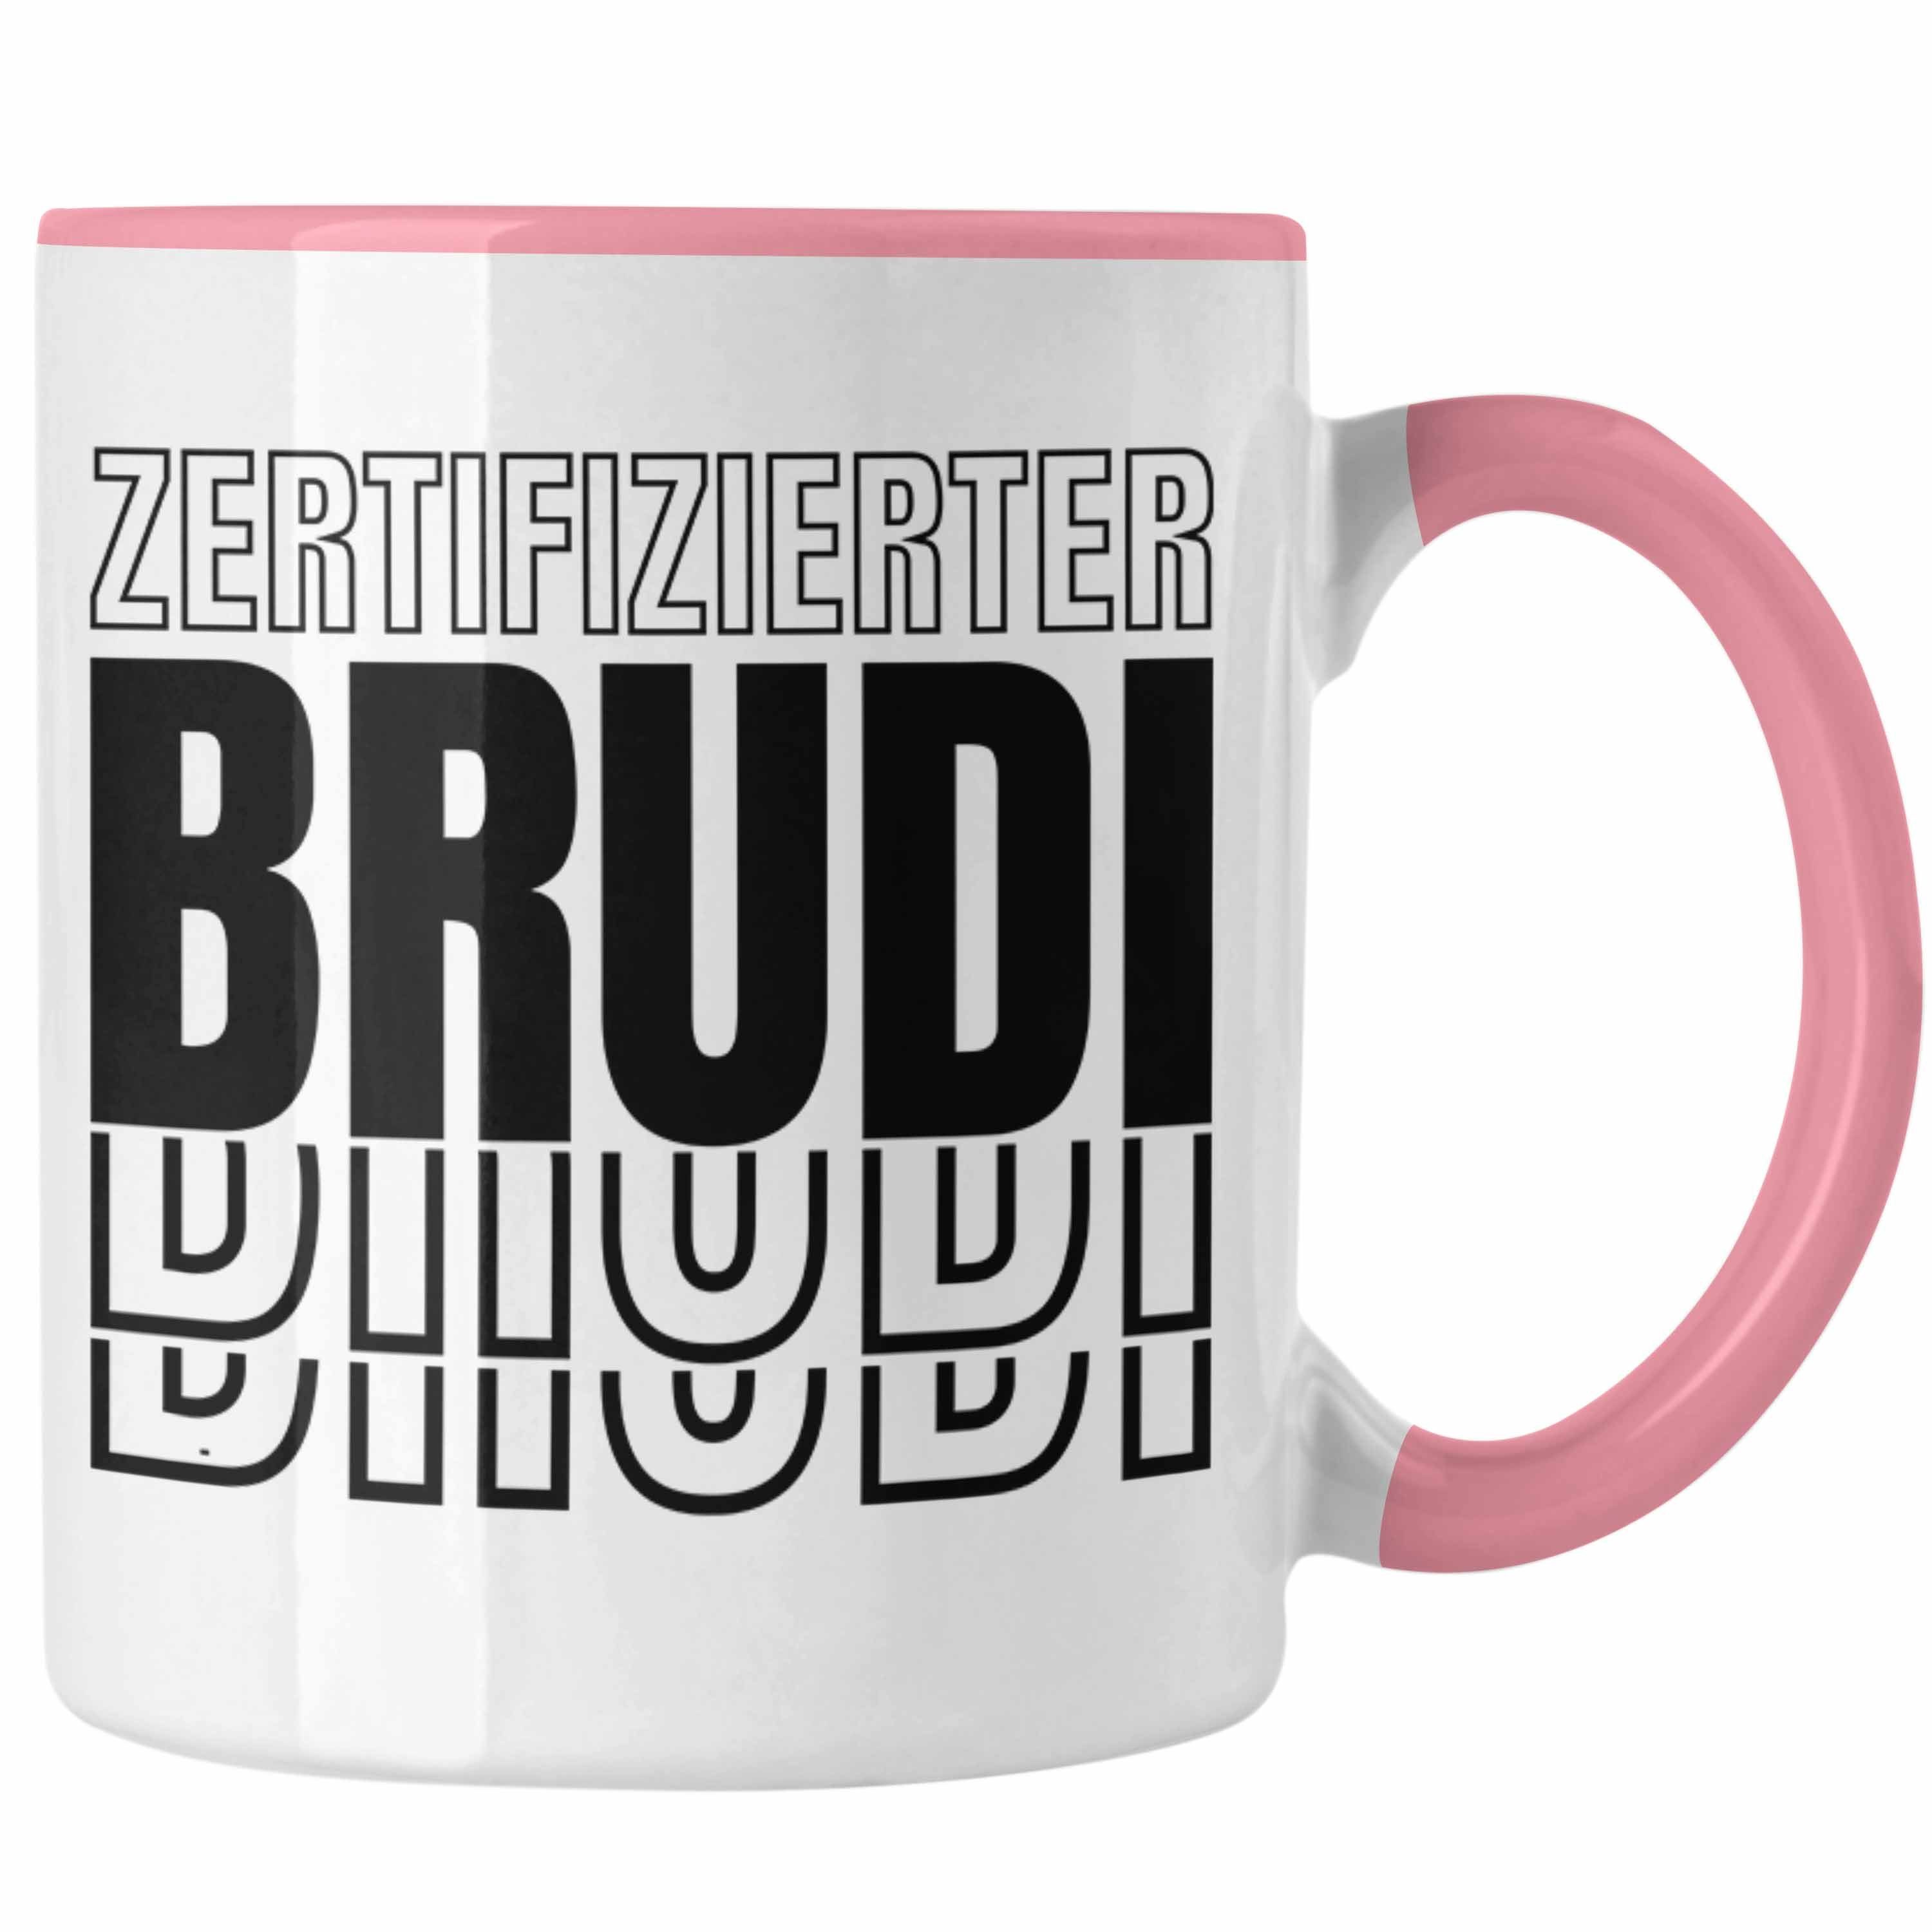 Trendation Bruder Tasse Zertifizierter Tasse Geschenkidee Freund Brudi Spruch Trendation Rosa Beste - Geschenk Bro